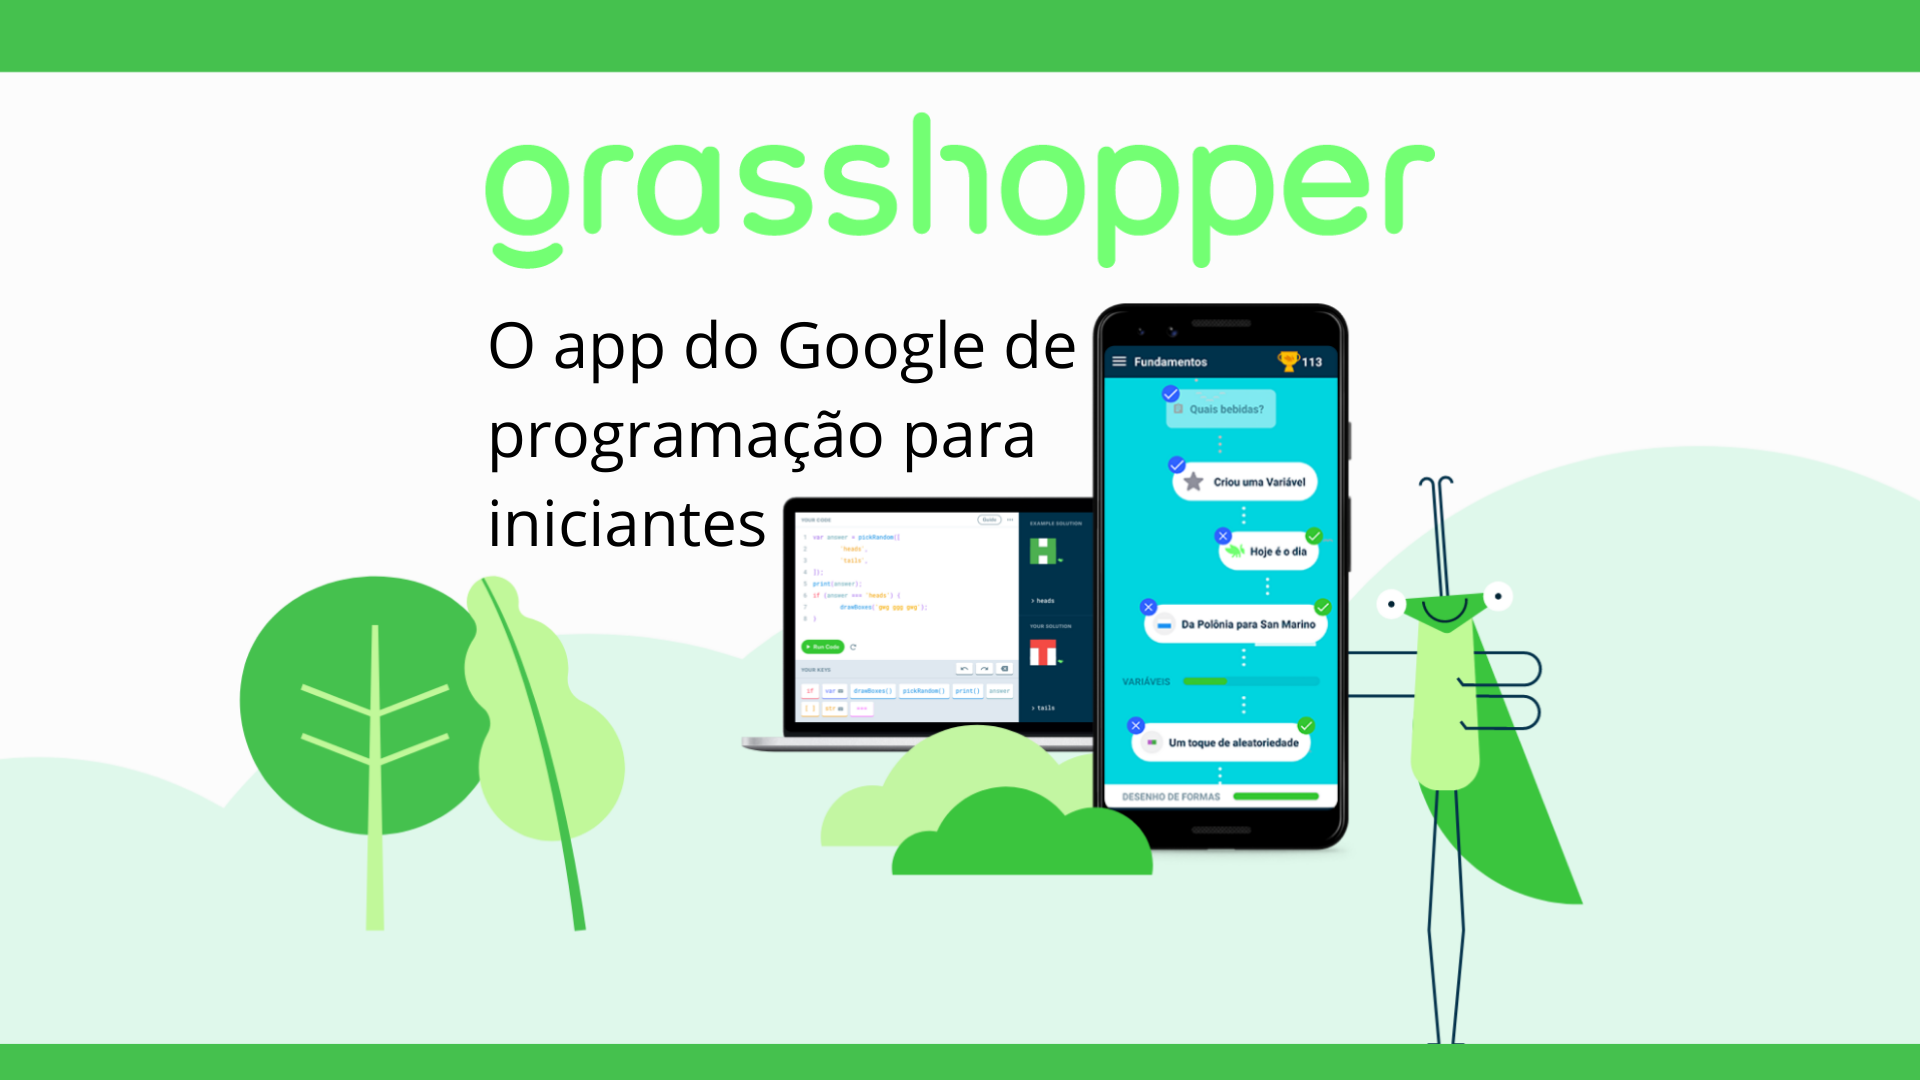 Google anuncia por engano fim do Grasshopper, app de ensino de programação  - Canaltech